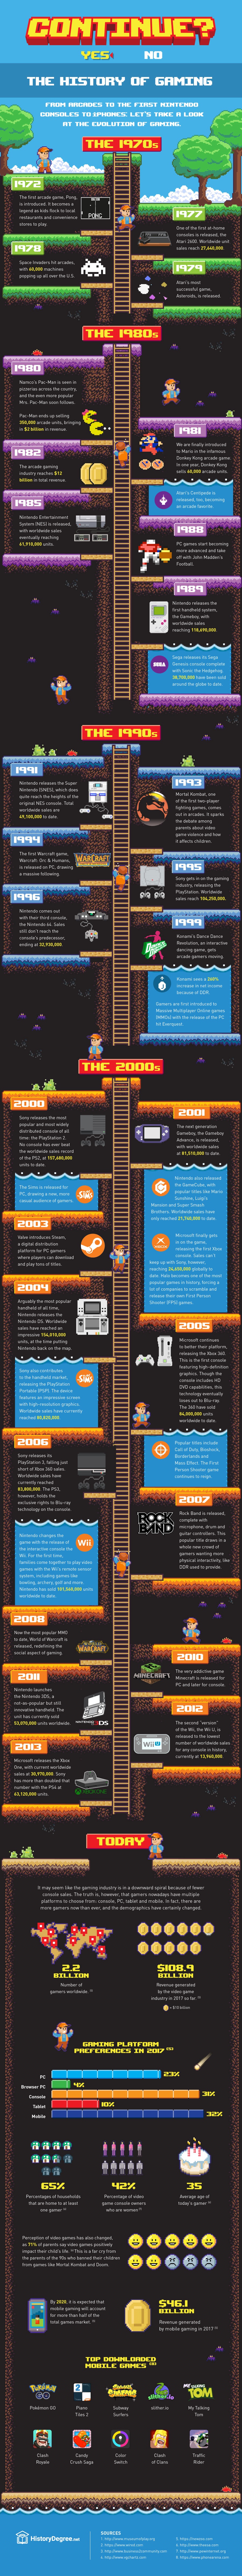 Video Game History | #Infographie : l'évolution des jeux vidéos depuis les années 70 !